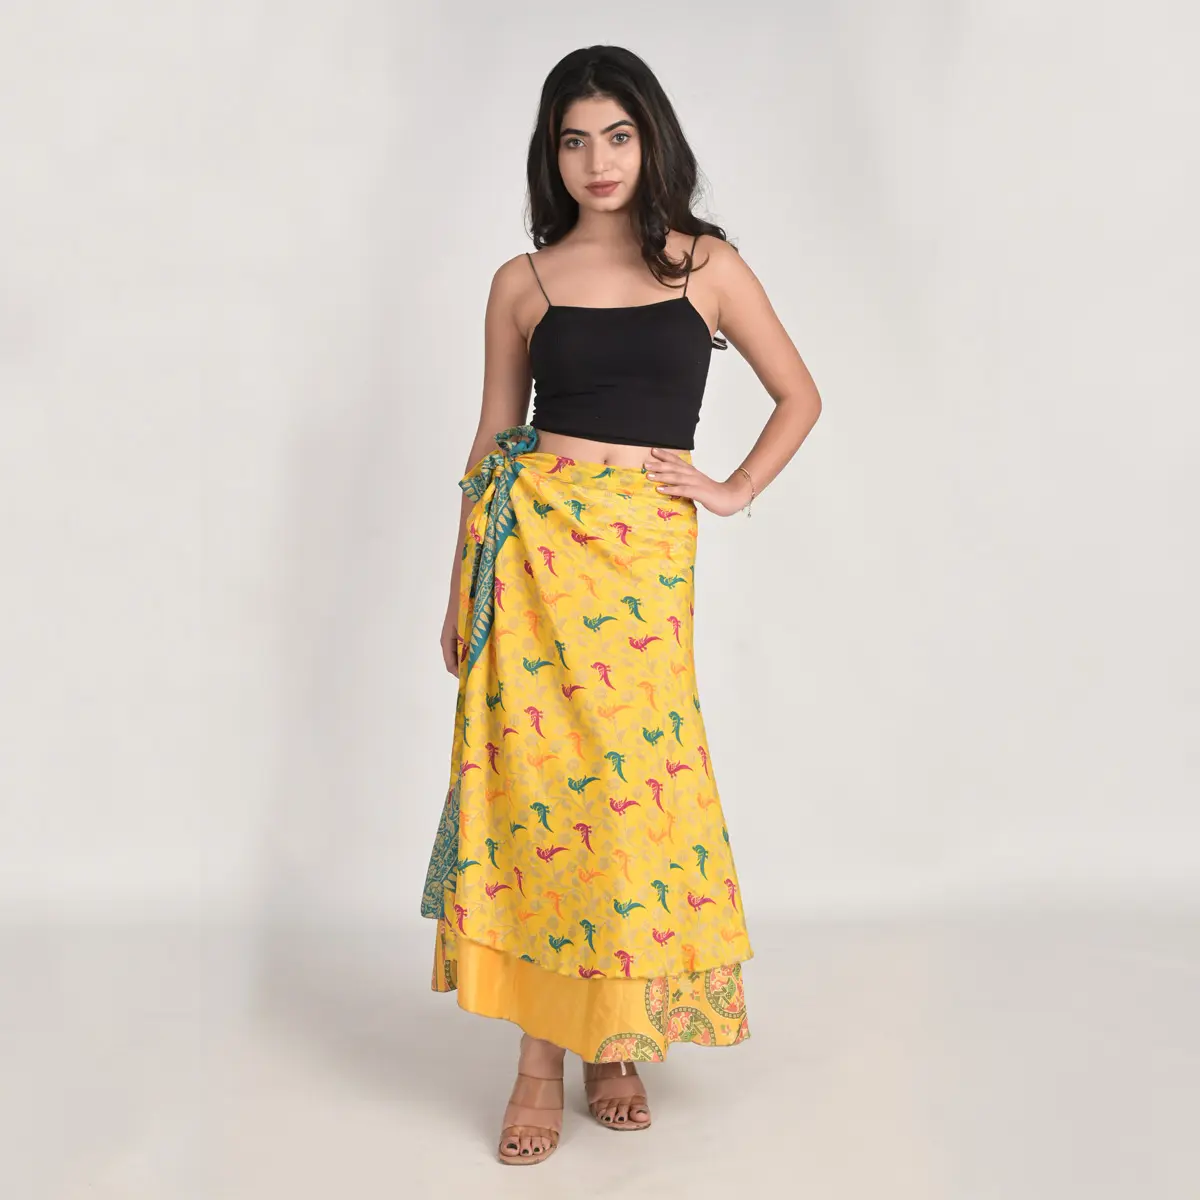 Vente de gros Nouveau indien Sari Art Soie Maxi Jupe Bohème Floral Hippie Boho Magic Wrap Jupes